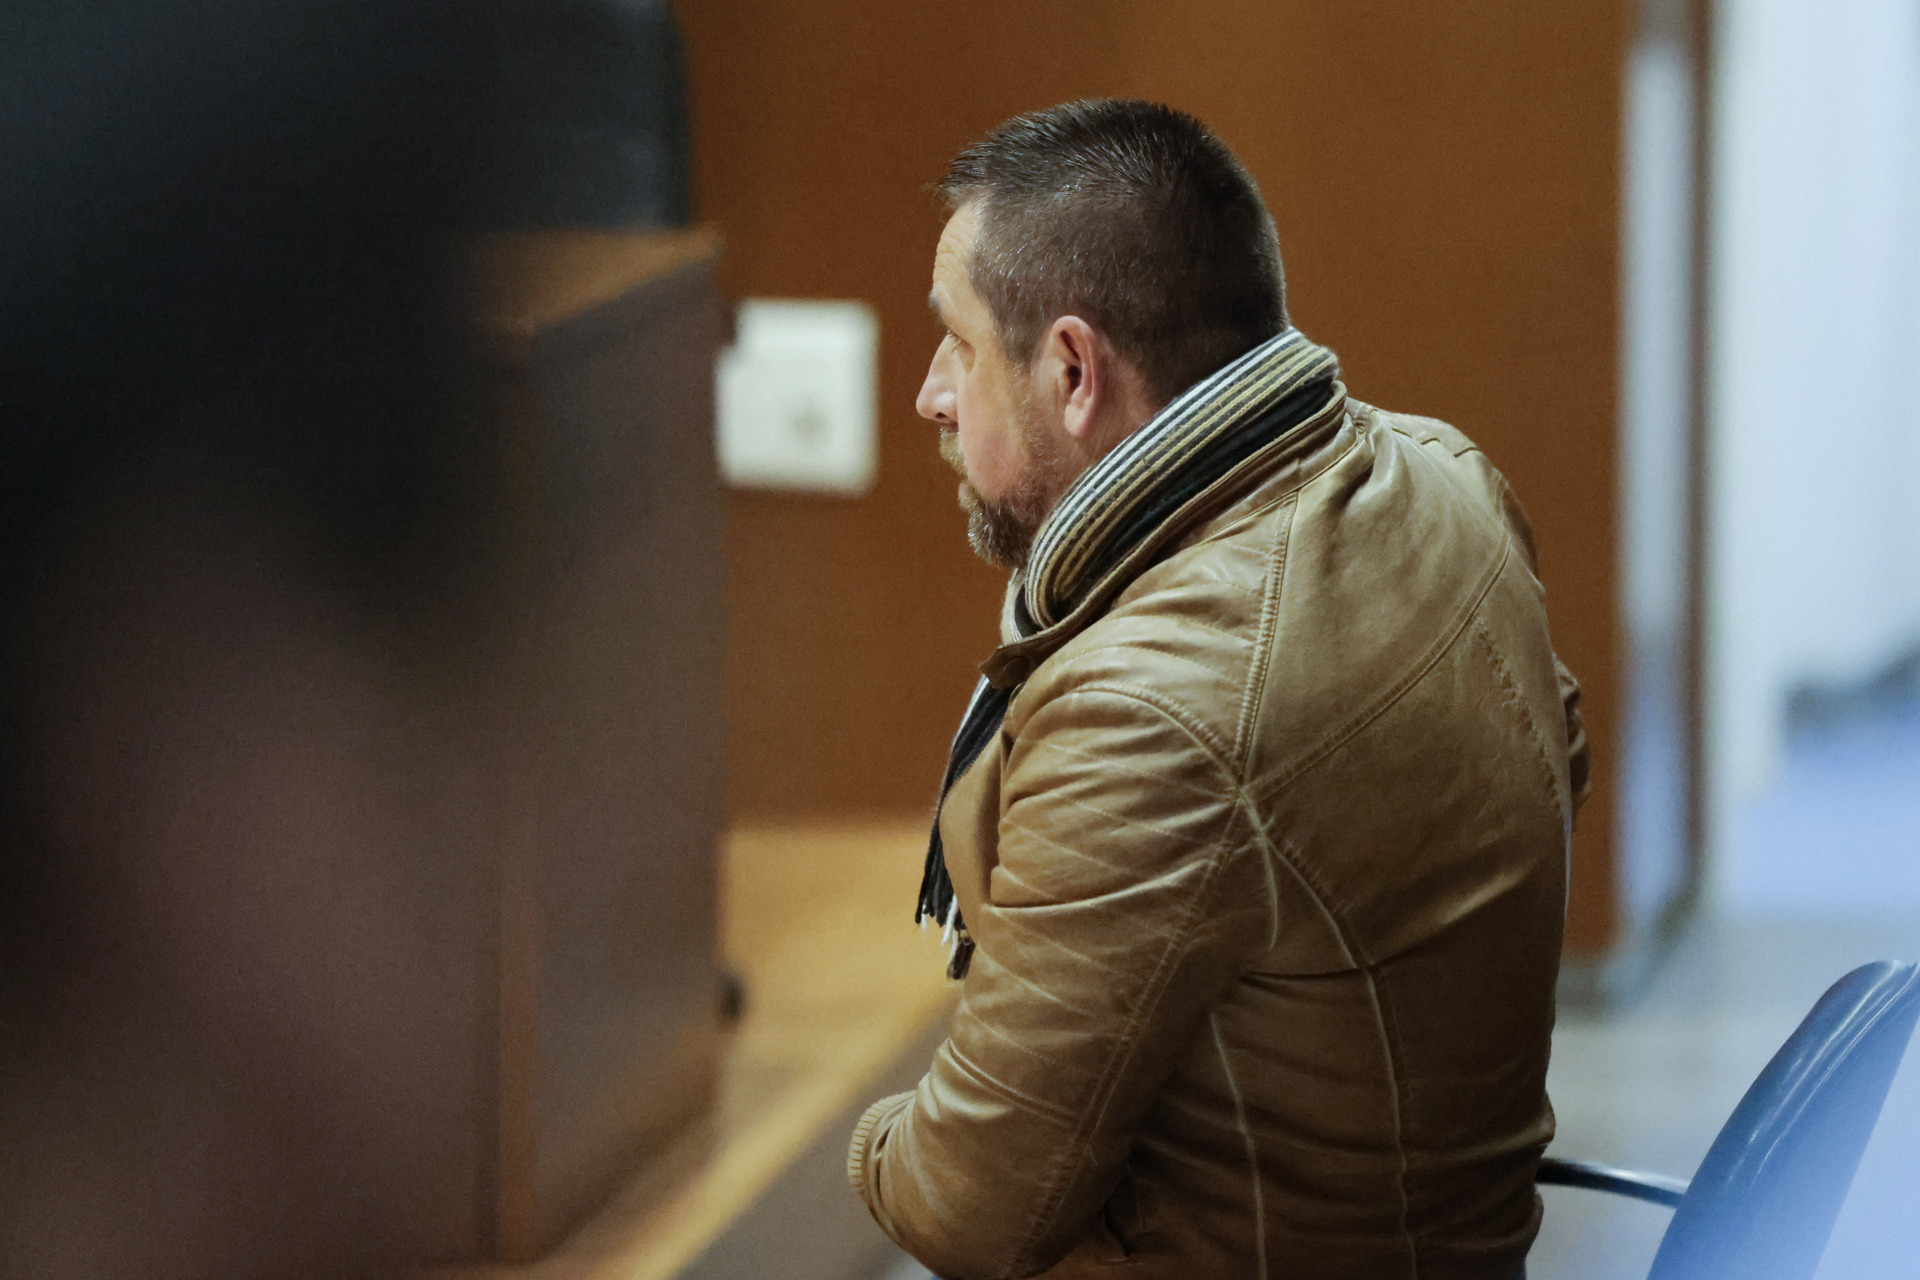 José Enrique Abuín Gey alias 'El Chicle', culpable del asesinato de Diana Quer, se sienta en el banquillo de los acusados por una supuesta agresión sexual a su cuñada en enero de 2005 durante el primer día de juicio este martes en A Coruña. EFE/Cabalar